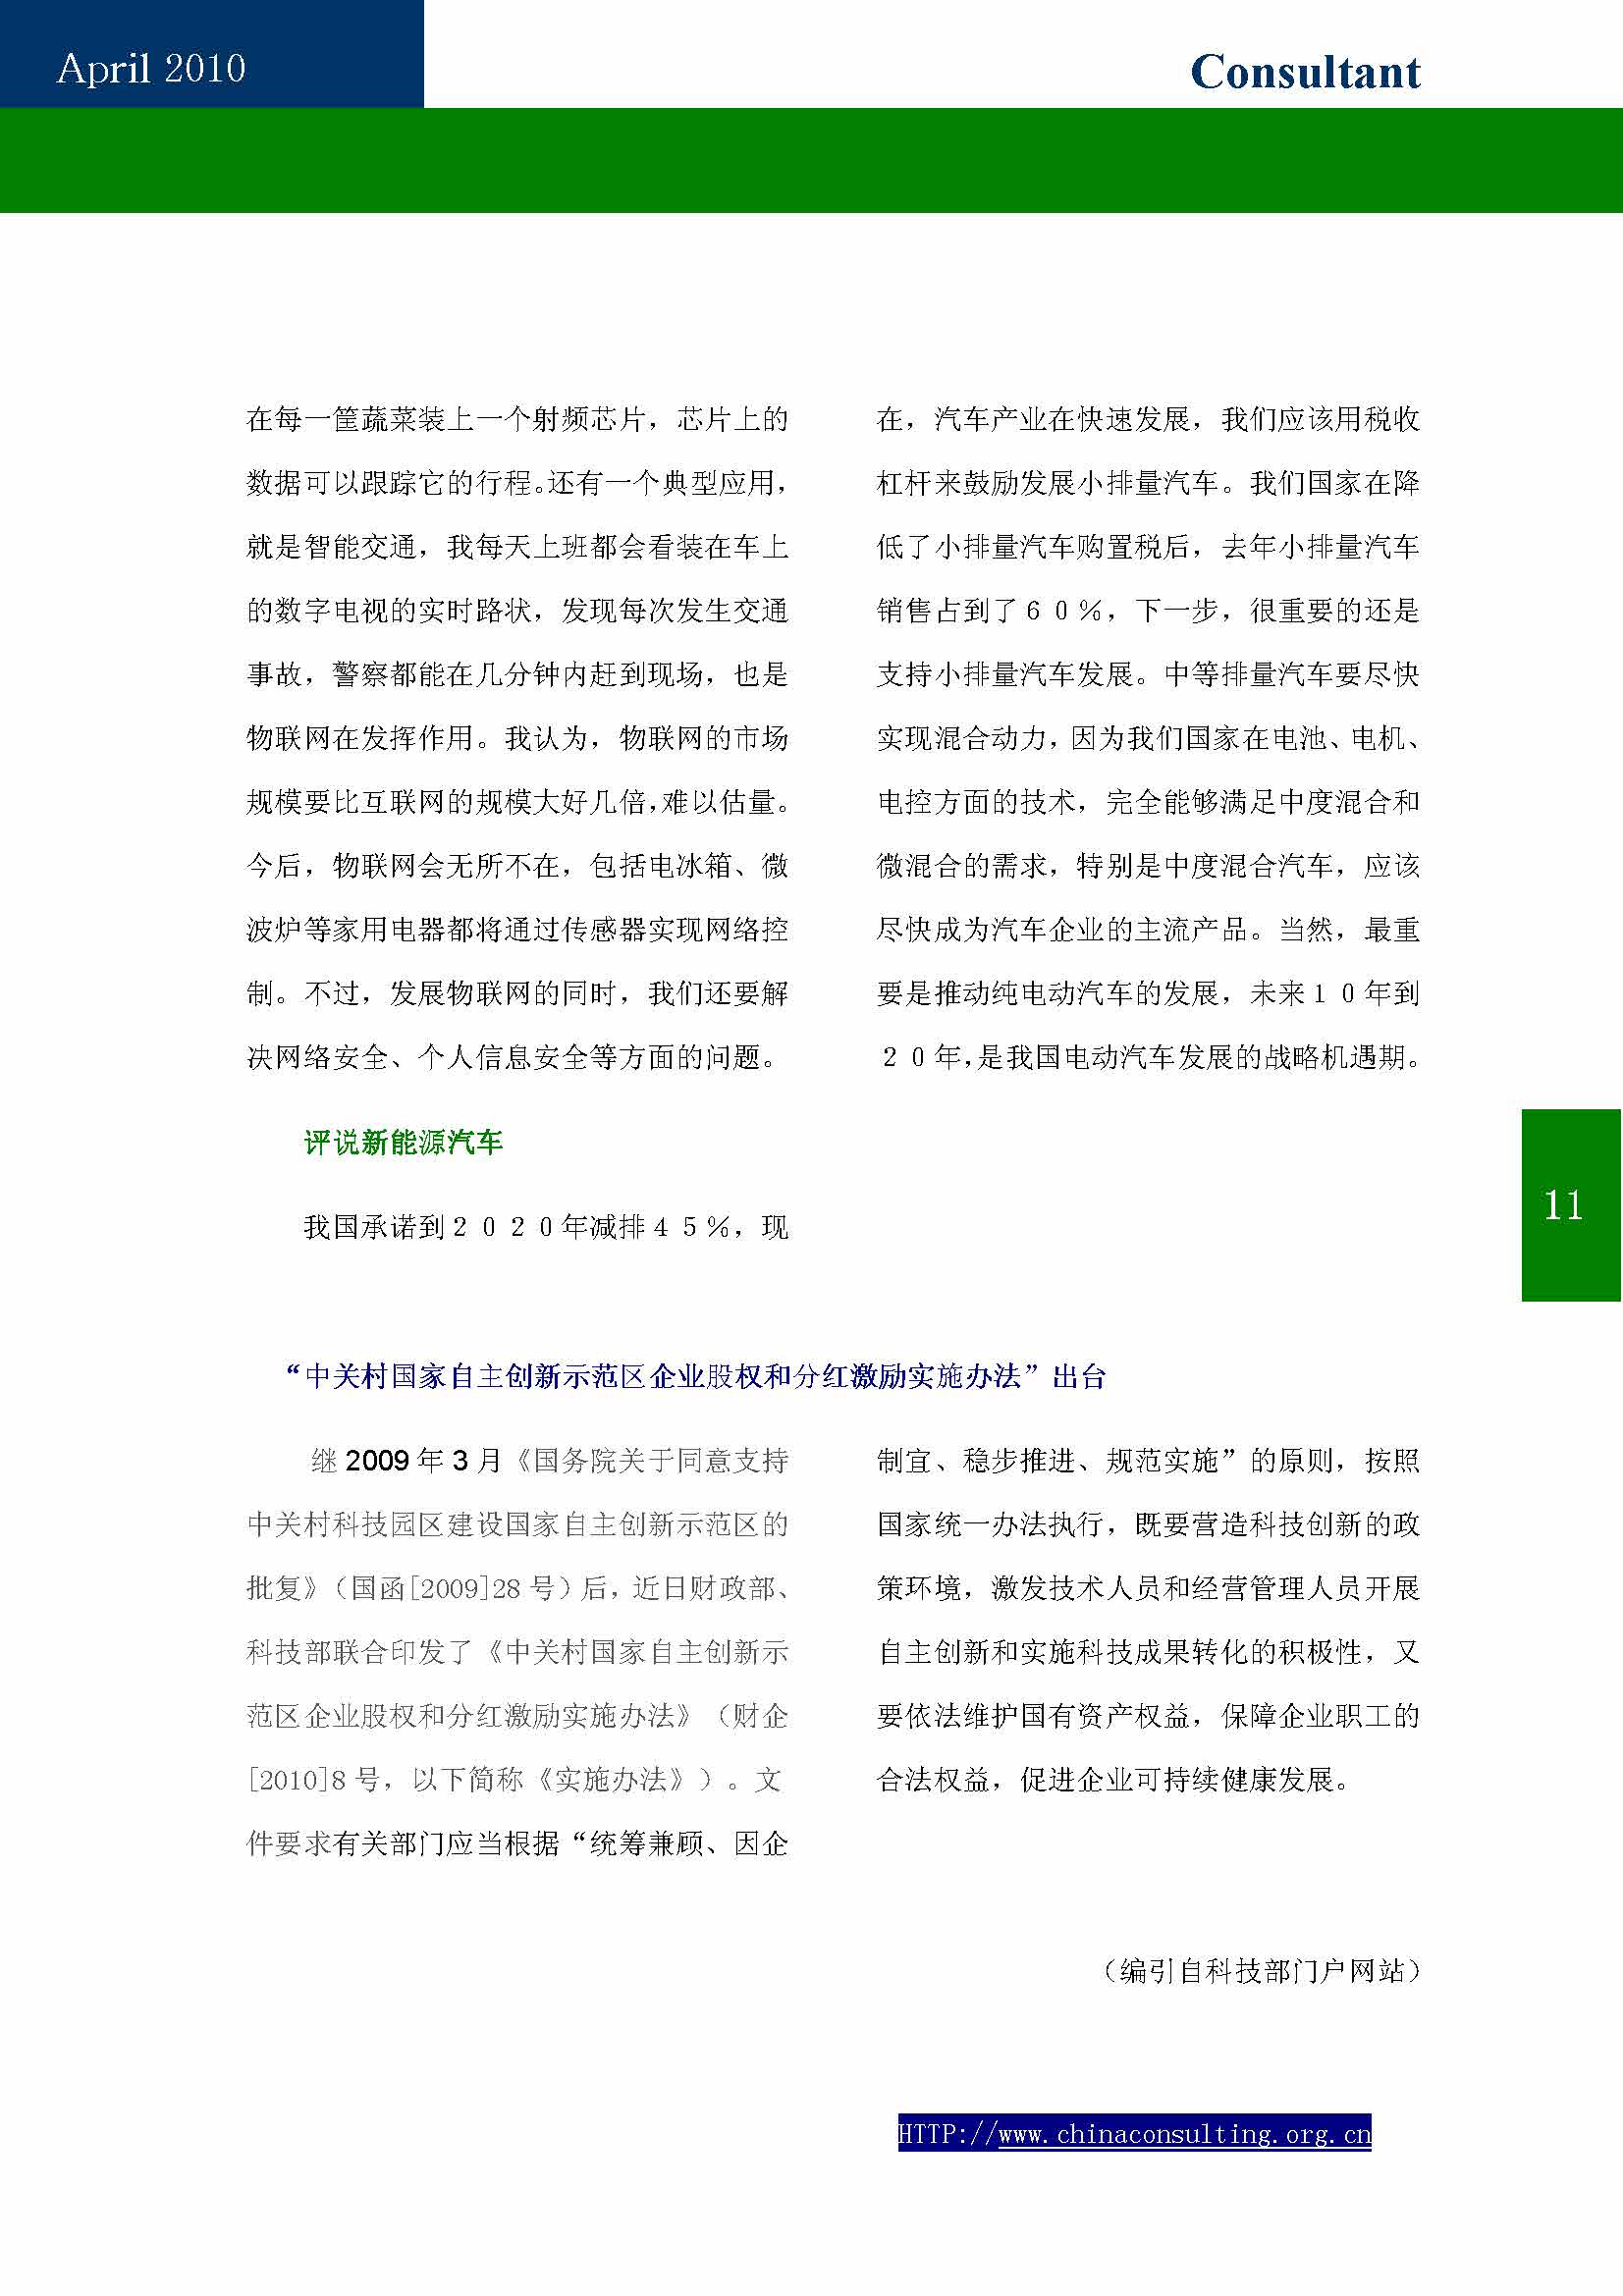 9中国科技咨询协会第九期会刊_页面_13.jpg